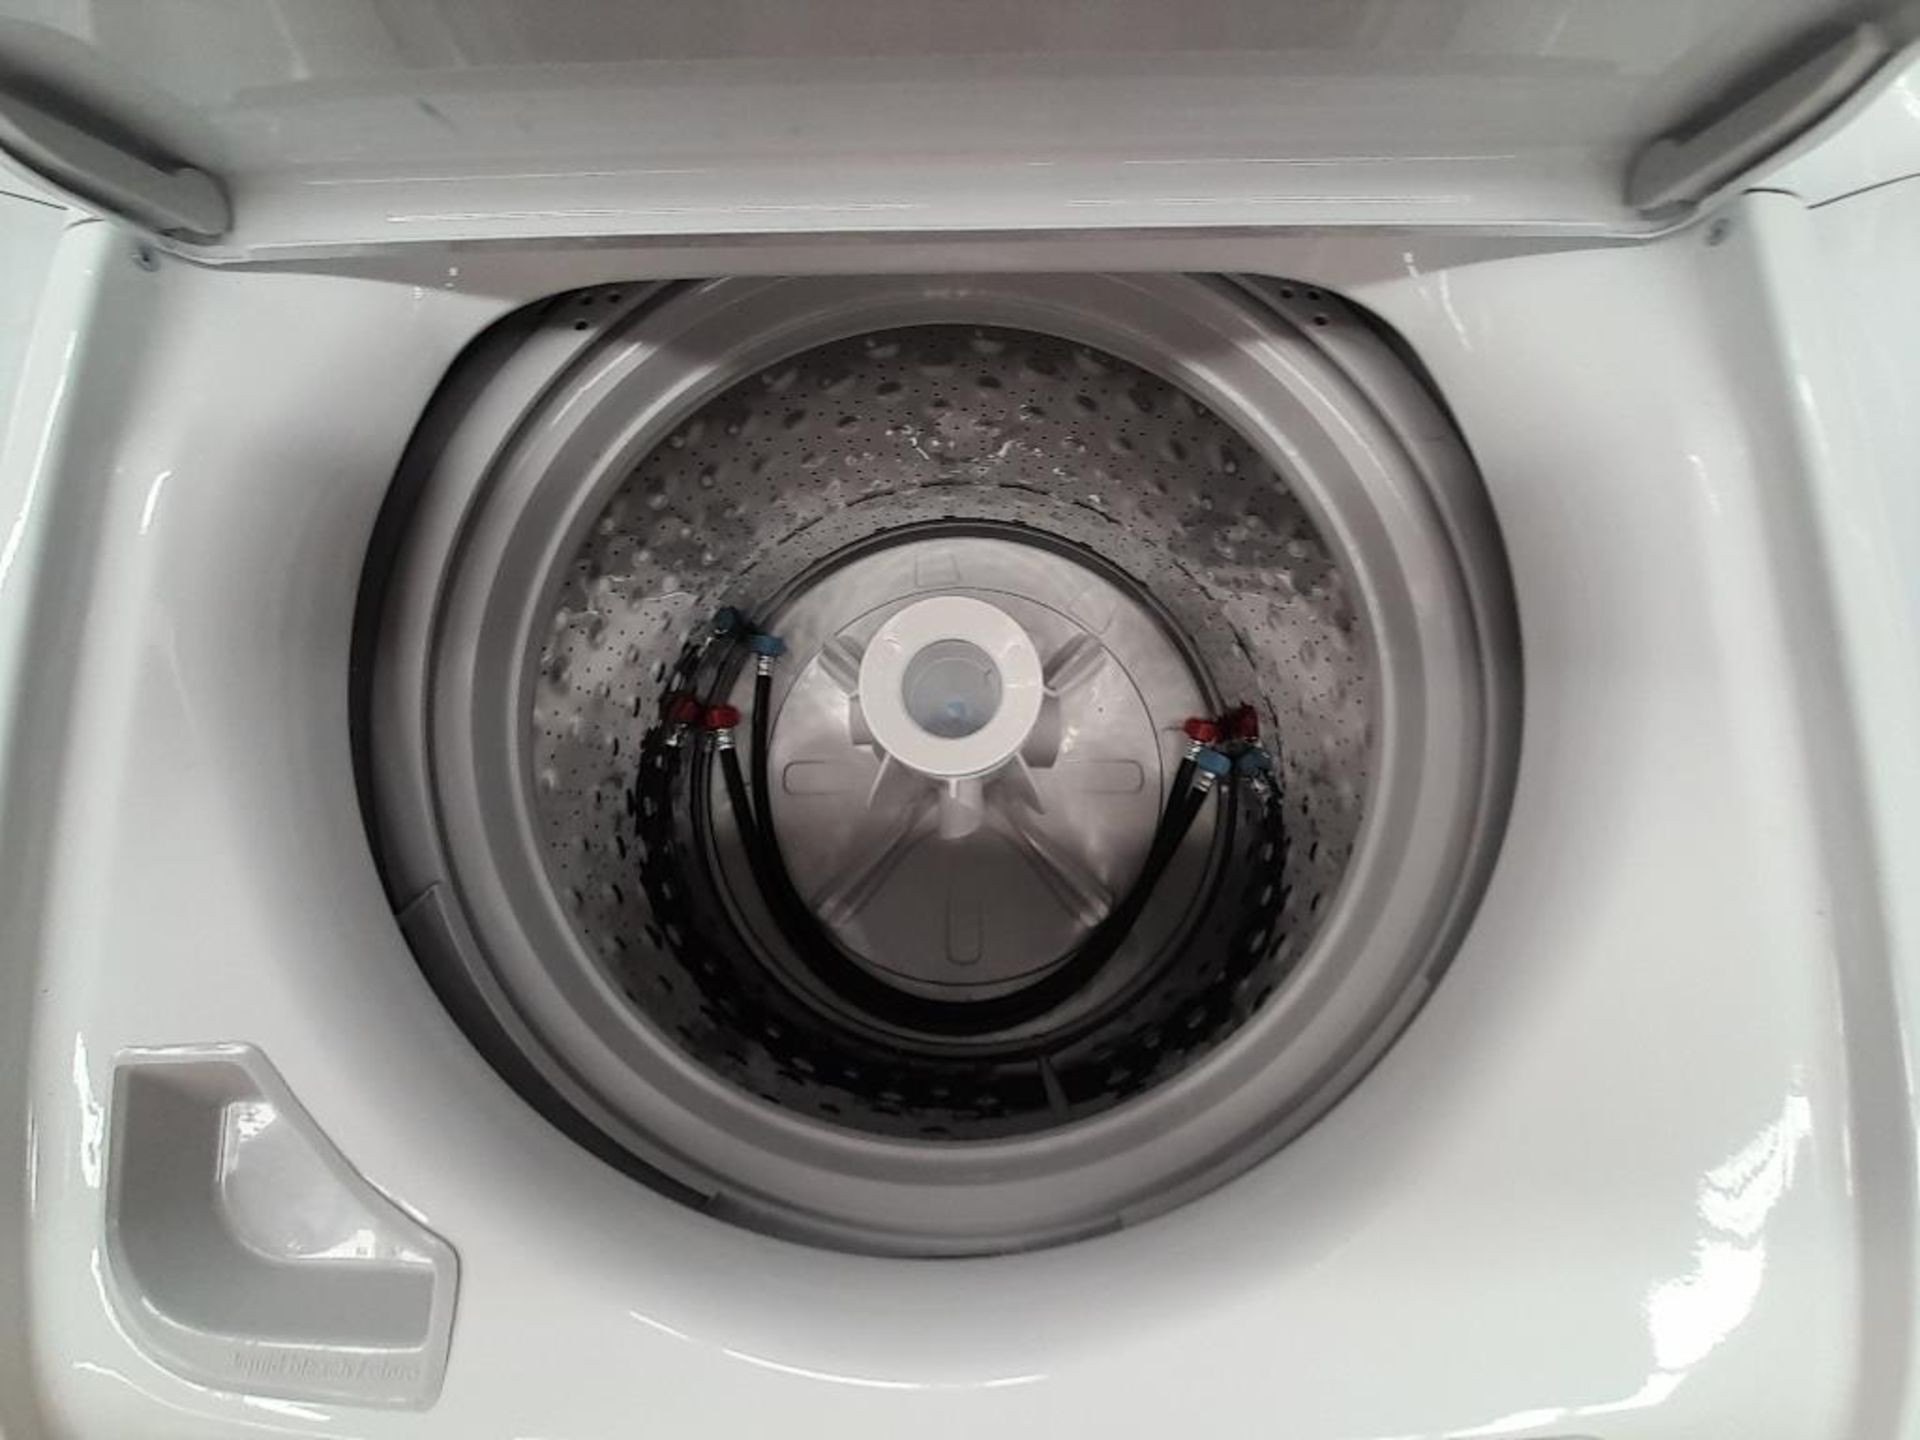 Lote de 2 lavadoras contiene: 1 lavadora de 20 KG Marca MABE, Modelo LMA70213CBAB02, Serie S19132, - Image 5 of 6